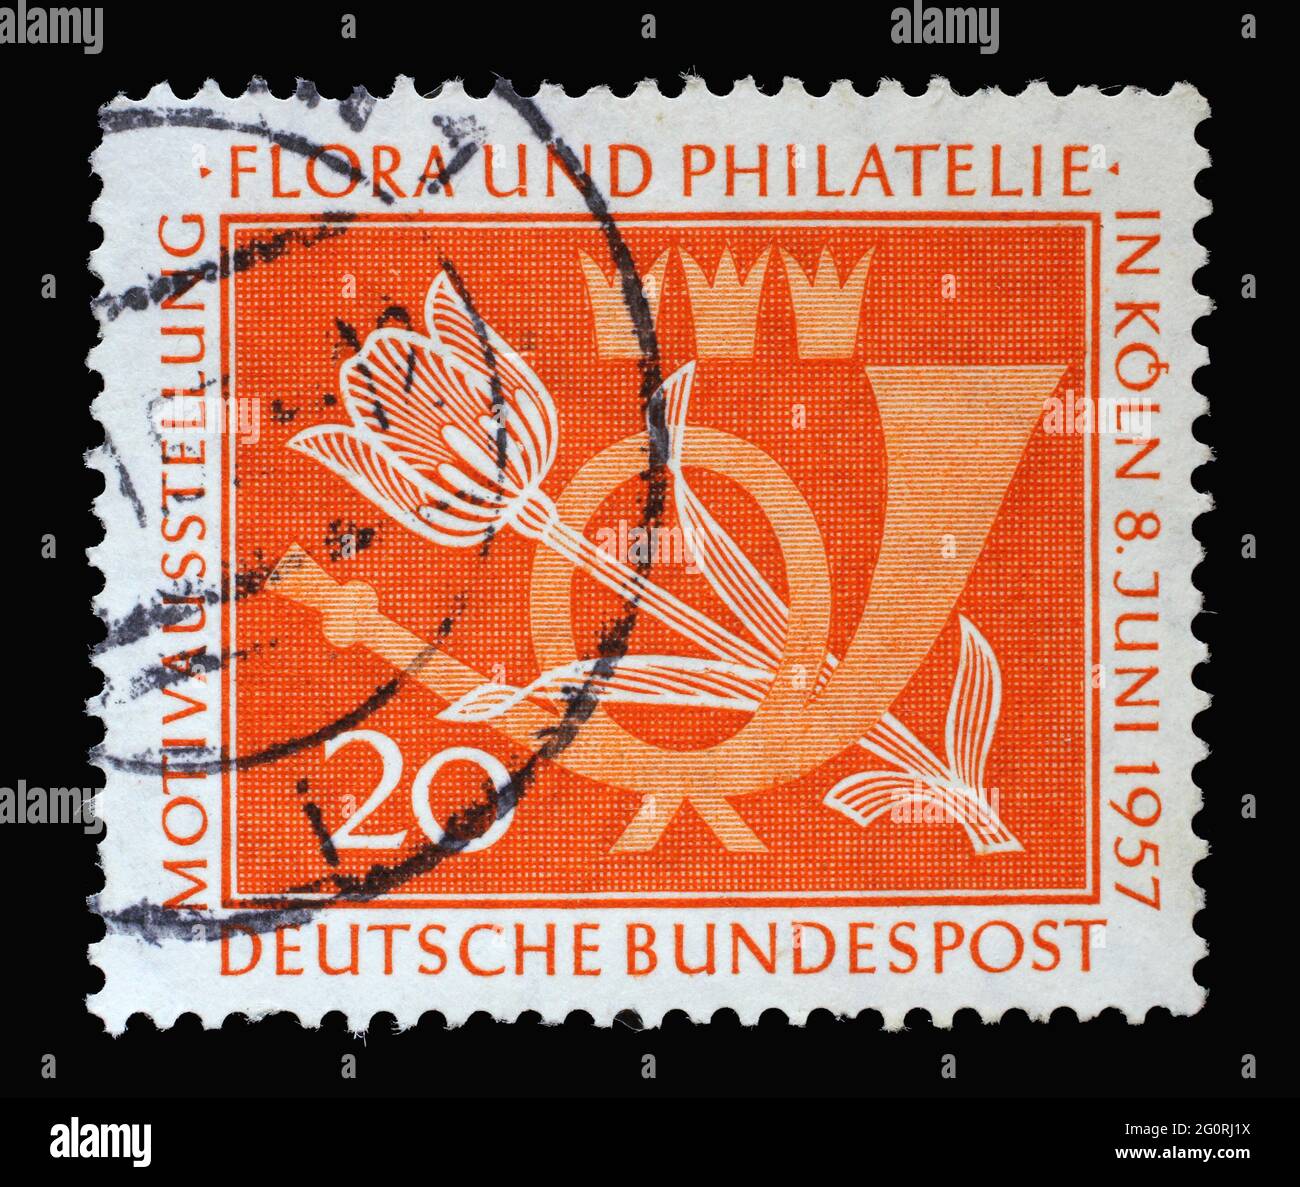 Timbre imprimé en Allemagne, montre une corne de poteau et une tulipe. L'occasion est le motif exposition flore et philatélie à Cologne, vers 1957 Banque D'Images